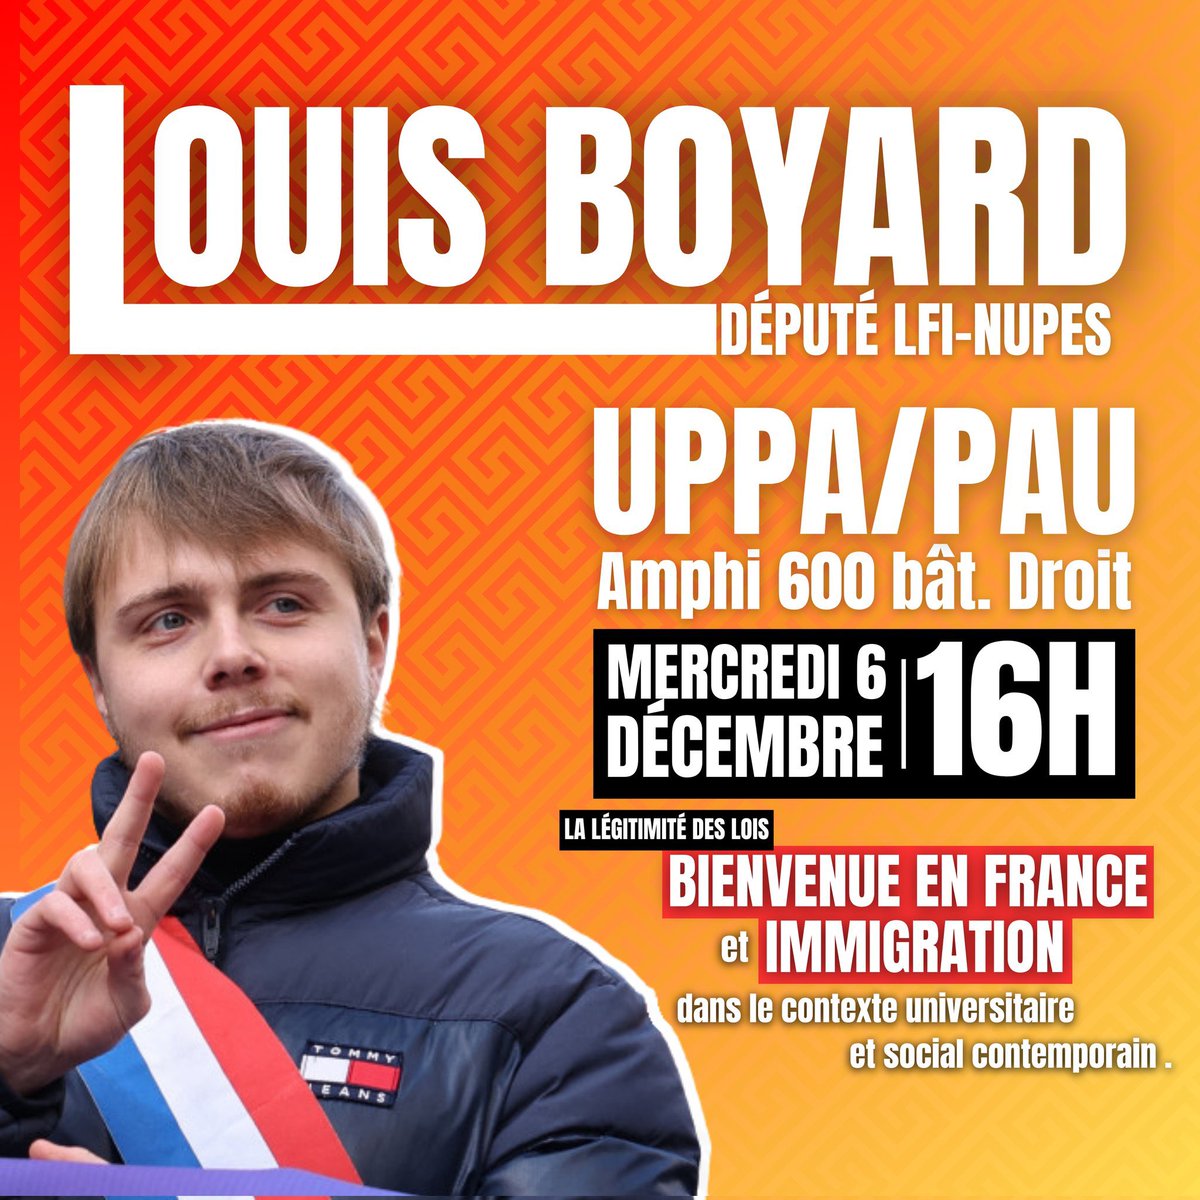 C’est à #pau ✅️ RDV avec @LouisBoyard Mercredi 6 DÉCEMBRE à L' #UPPA ➡️ Une conférence sur la Légitimité des lois 'BIENVENUE EN FRANCE' et 'IMMIGRATION' dans le contexte universitaire et social contemporain. Horaire : 16 H 🕓 Lieu 📍 : Amphi 600, Bâtiment Droit.